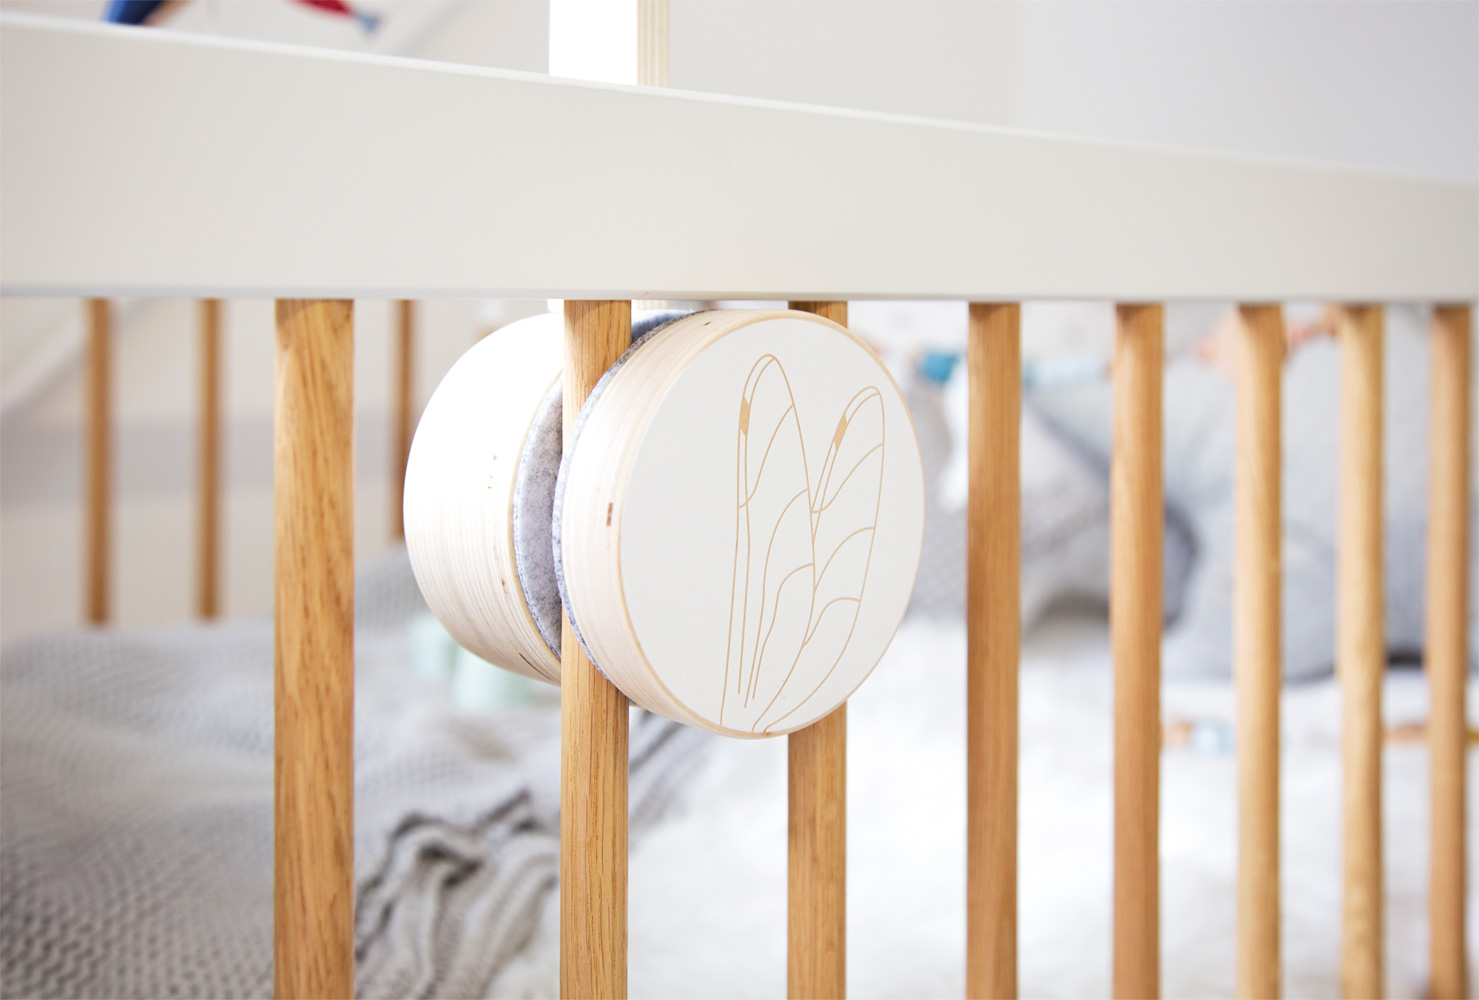 Support mobile en bois – Montage rapide et facile – Support mobile pour lit  bébé et parc, fabriqué